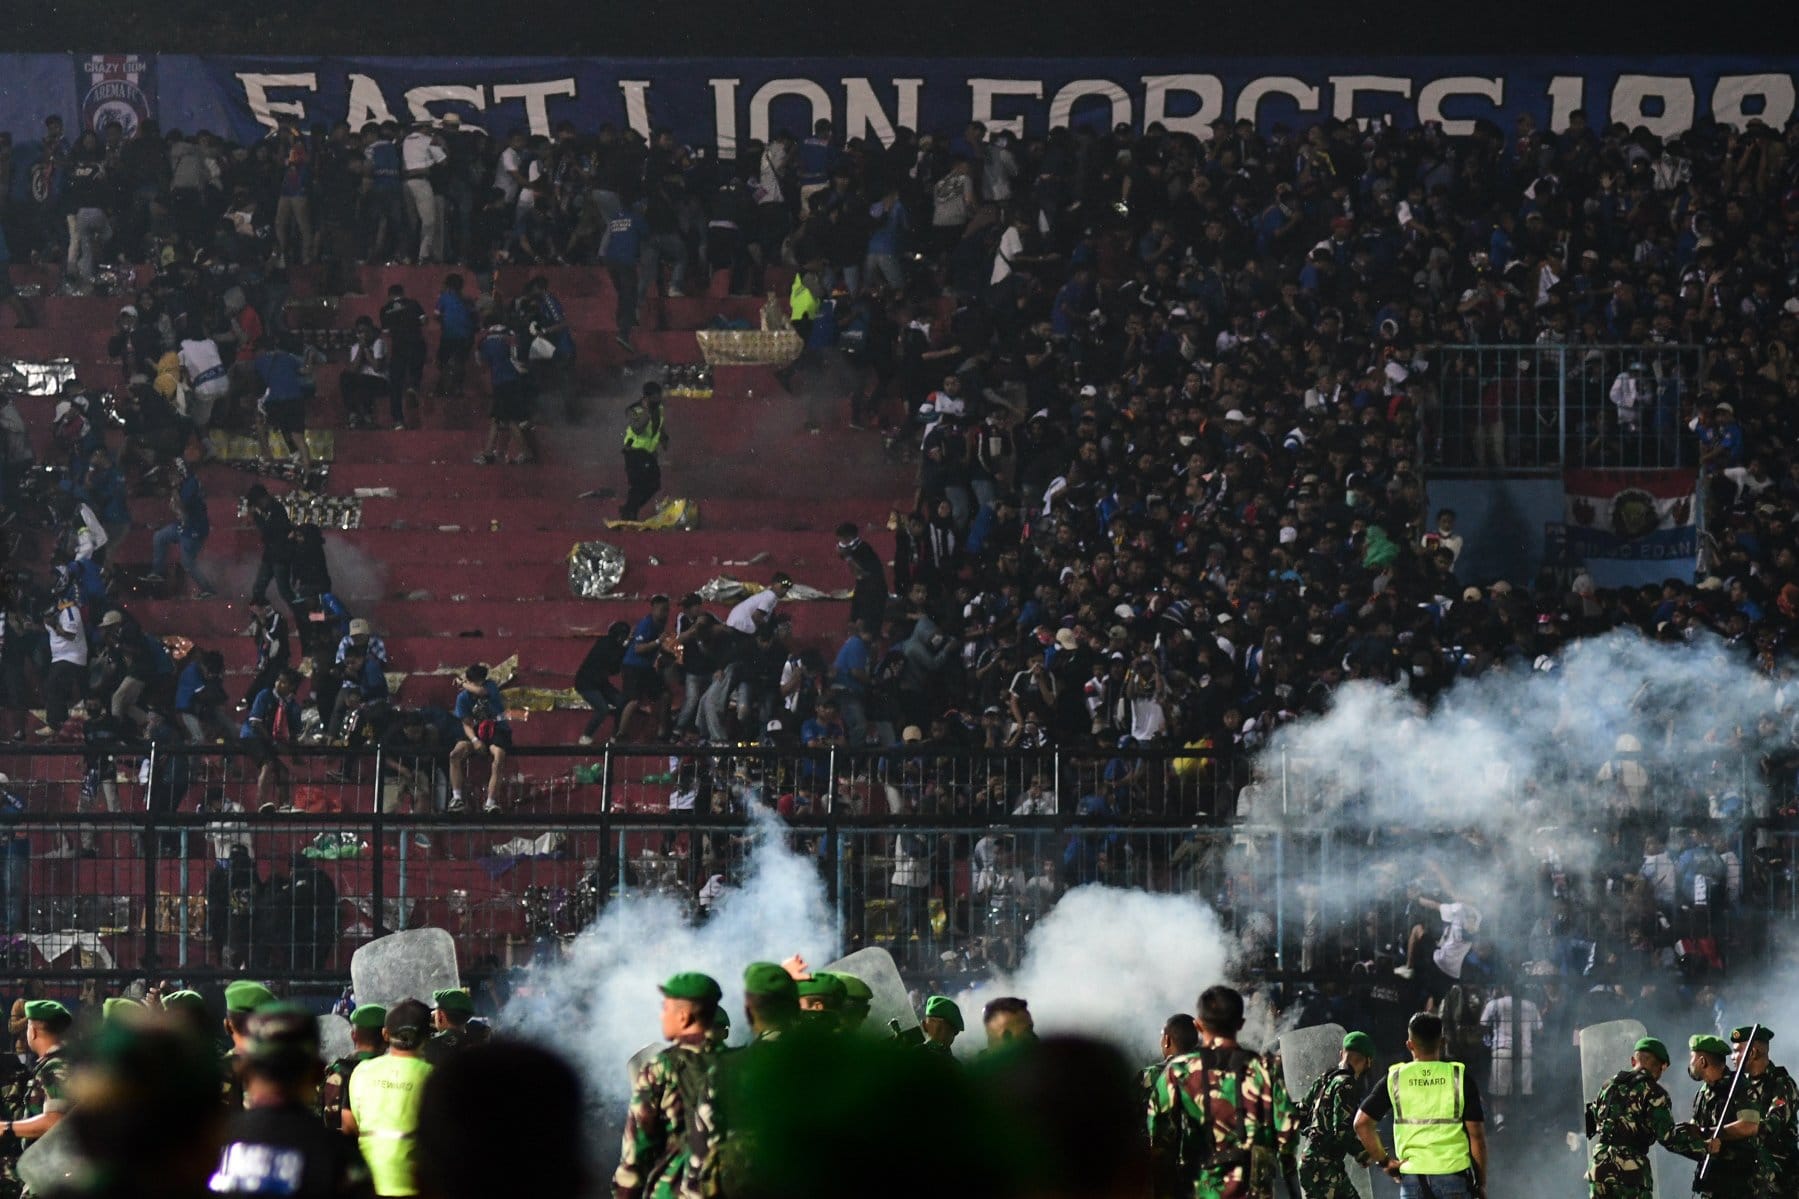 Hỗn loạn tại sân bóng đá Kanjuruhan ở Indonesia (ảnh: Reuters)